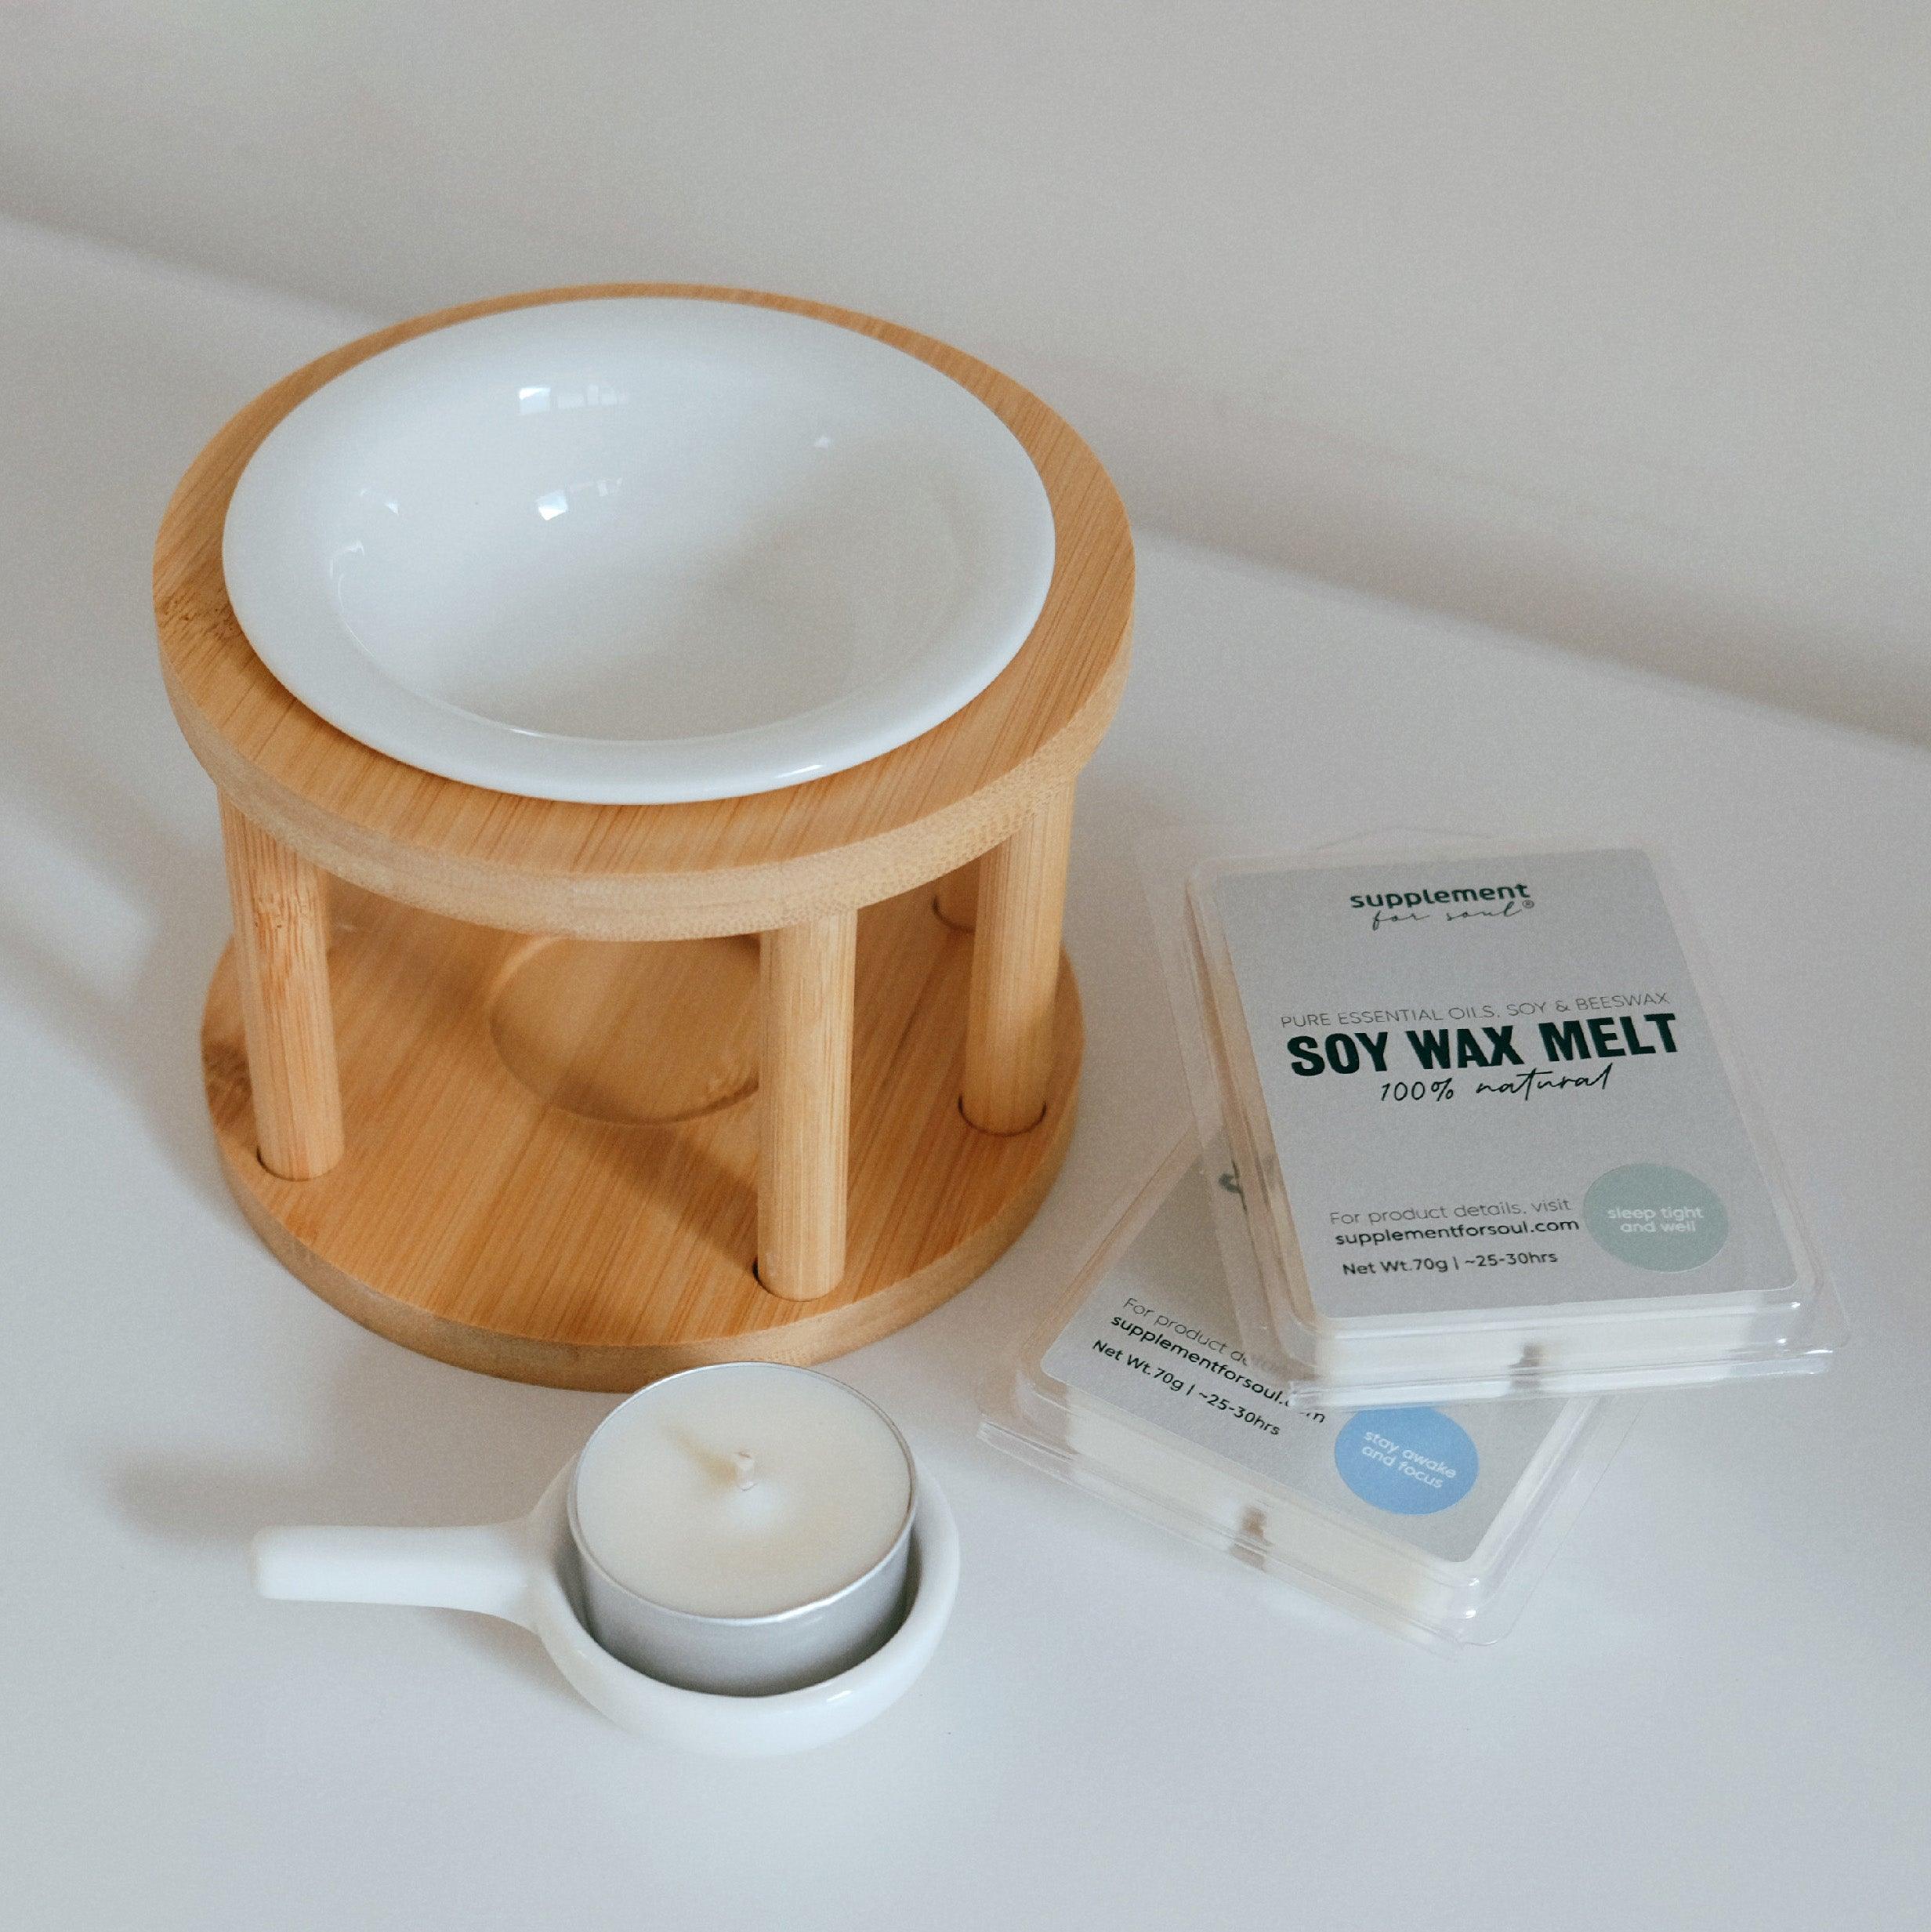 Wax Melt - 香磚 【Wellness Candles' Formula】 - supplement for soul